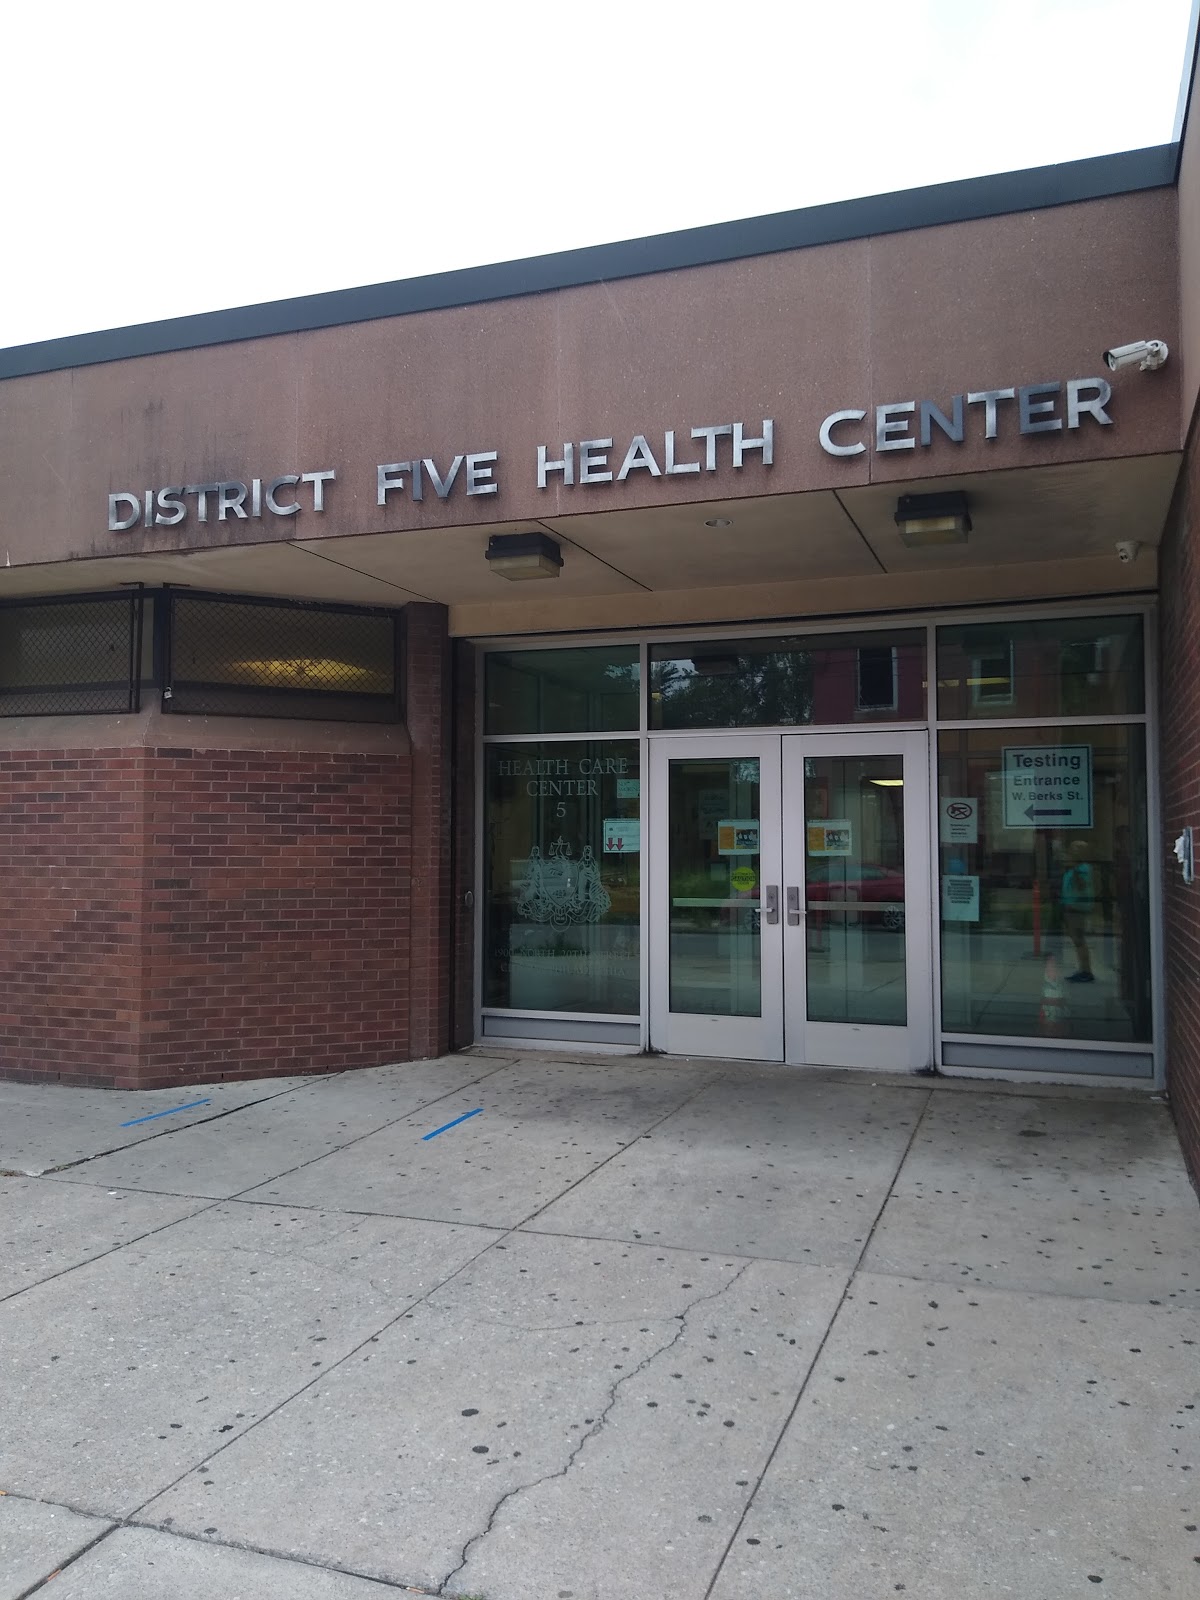 Outside of Philadelphia Department of Public Health, Health Center 5